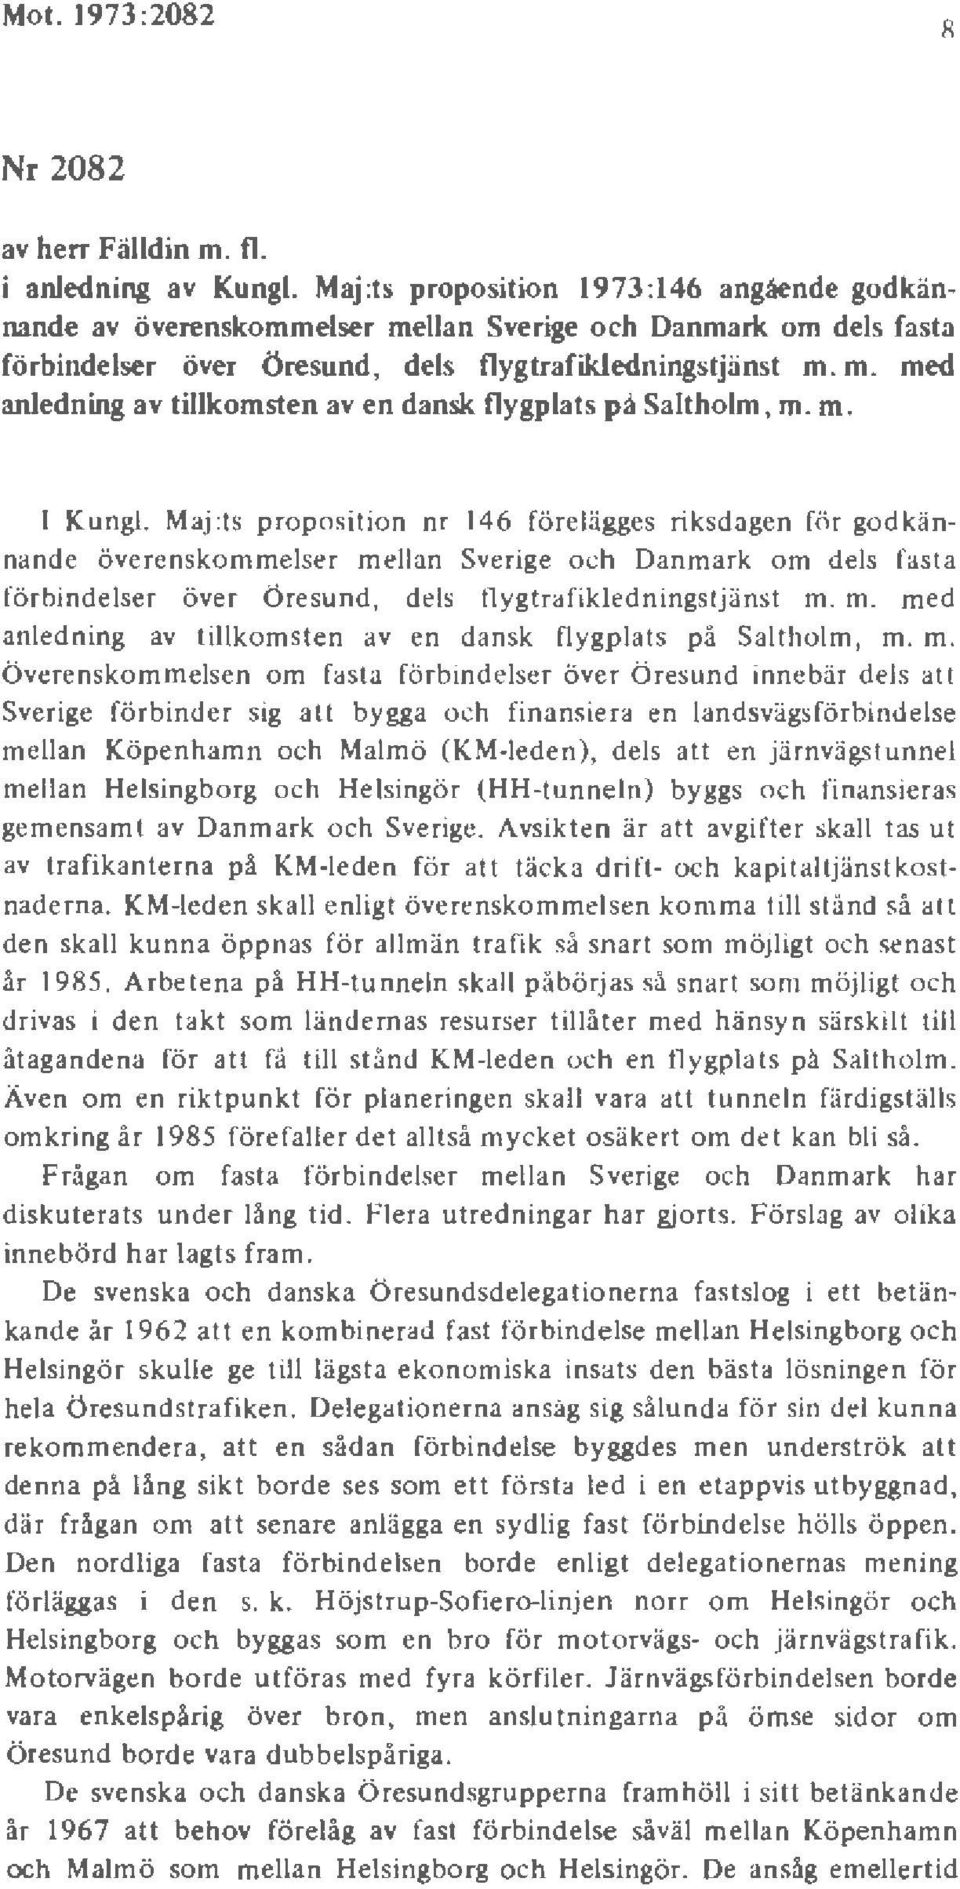 m. l Kungl. Maj :ts proposition nr 146 förelägges riksdagen för godkännande överenskommelser mellan Sverige och Danmark om dels fasta förbindelser över Öresund, dels flygtrafikledningstjänst m. m. med anl edning av tillkomsten av en dansk flygplats på Saltholm, m.